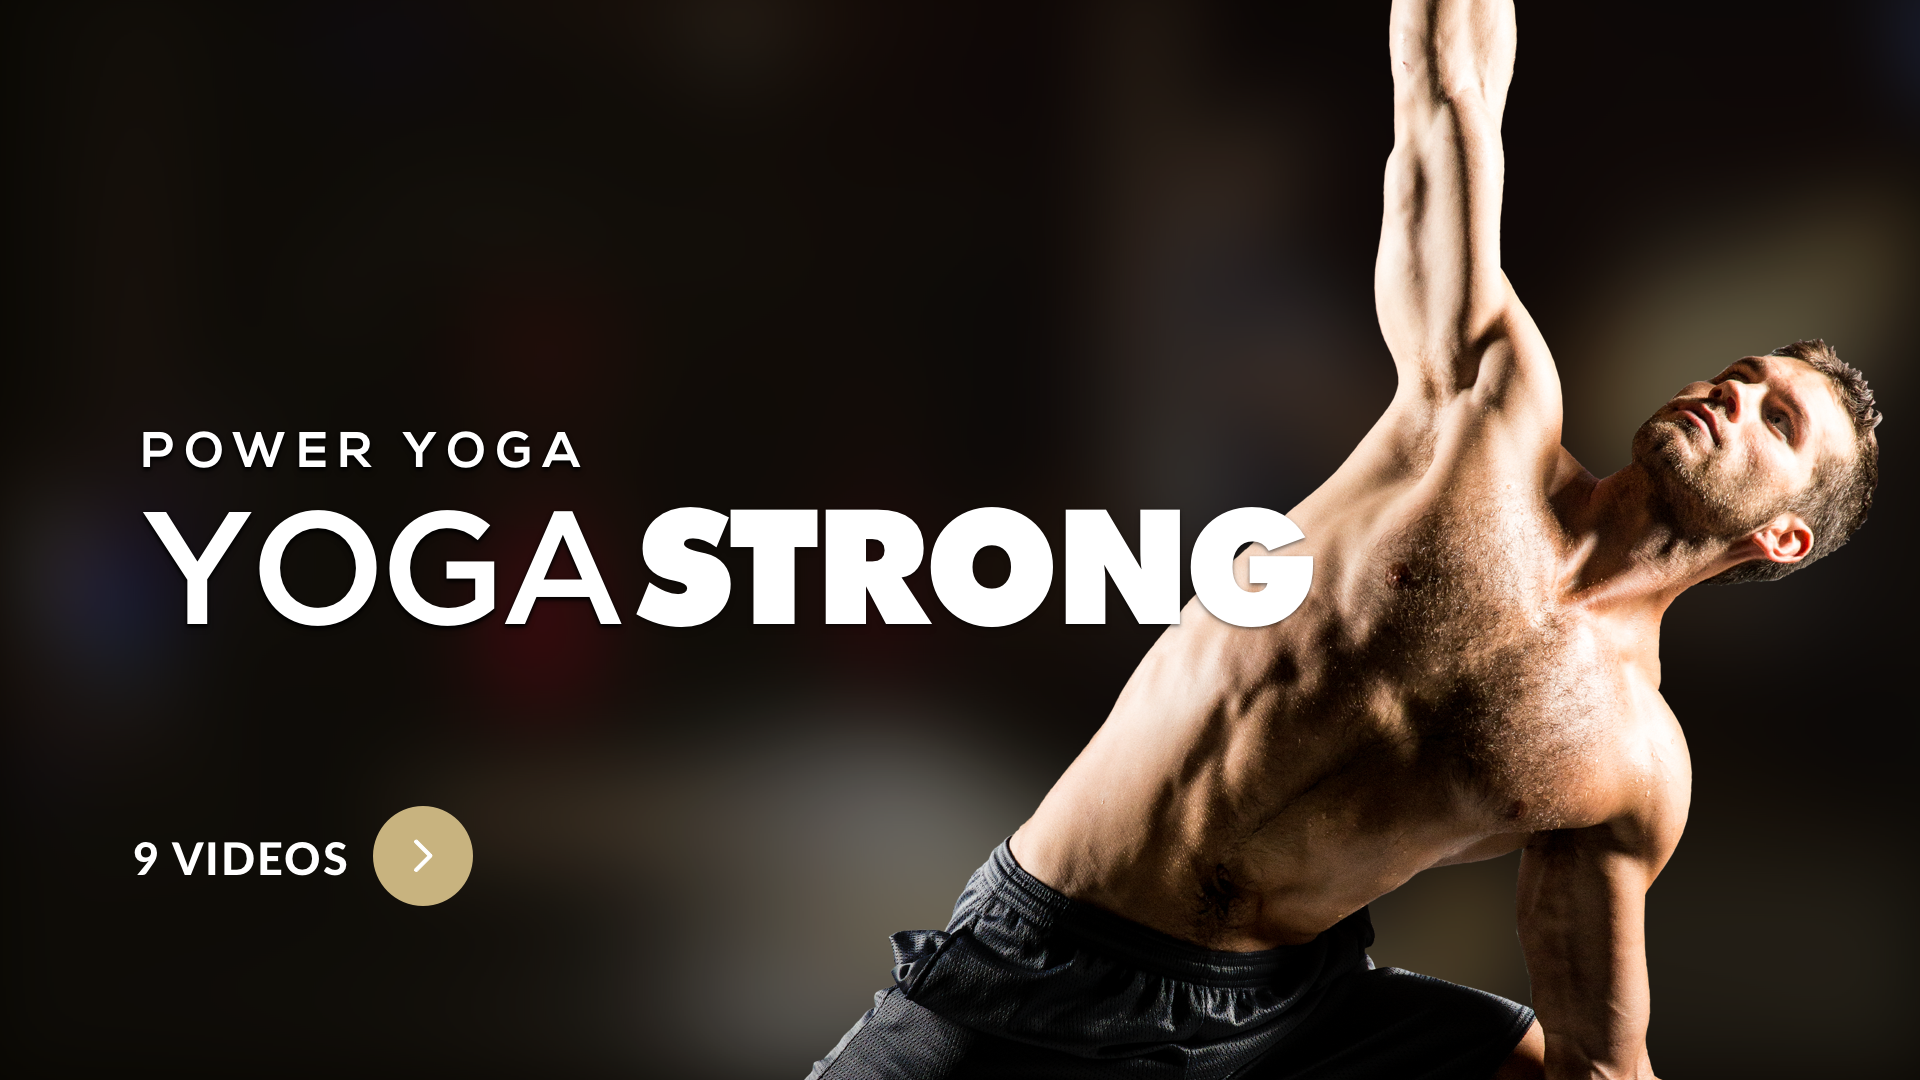 Yoga-Strong